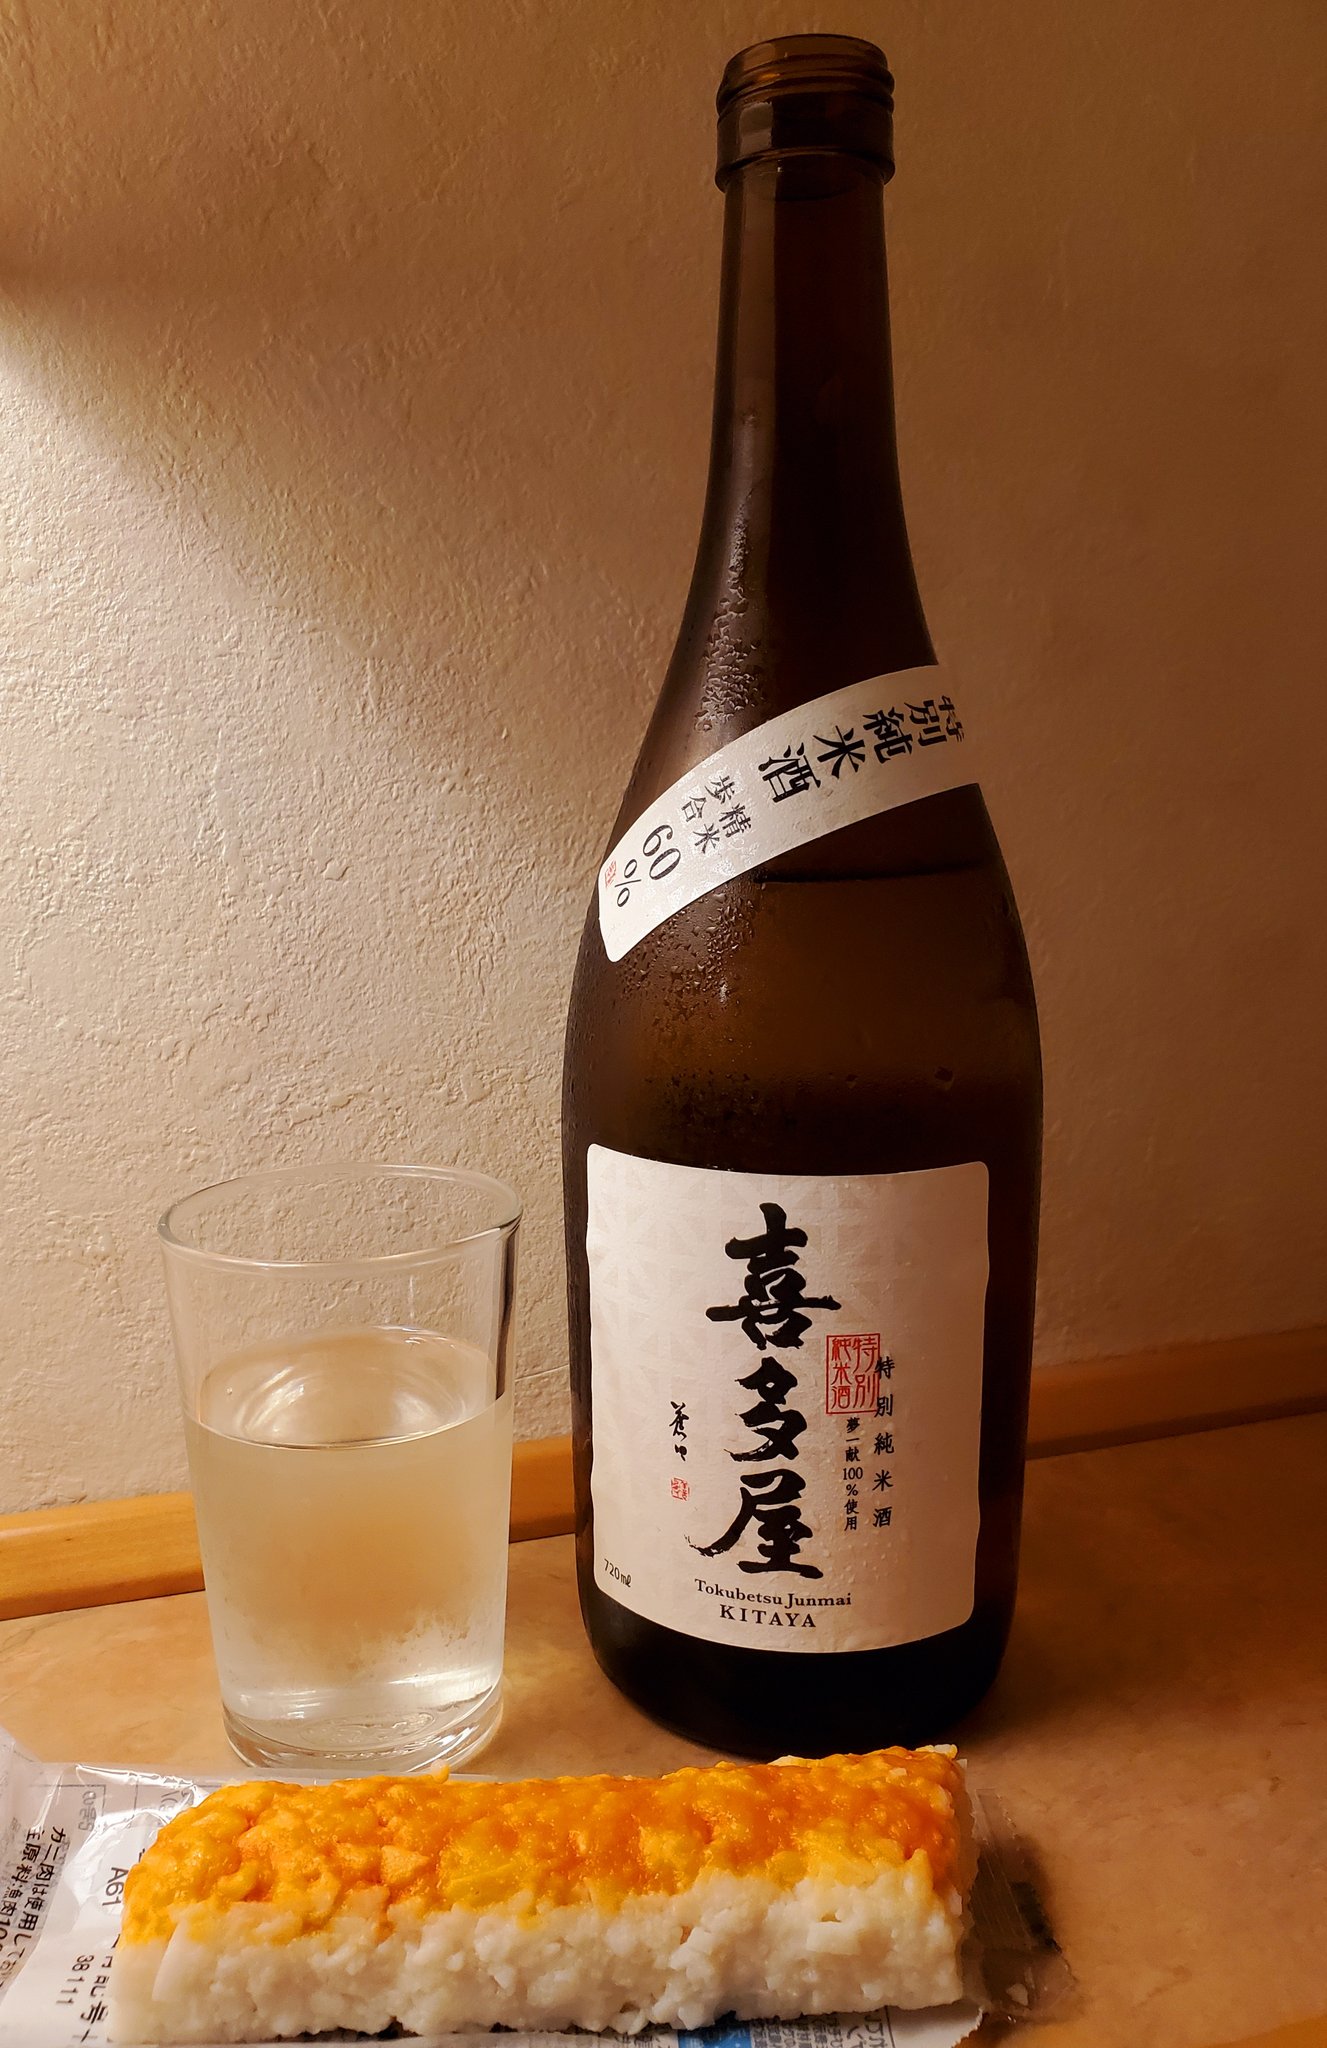 Rượu sake Kitaya Tokubetsu Junmaishu là gì?